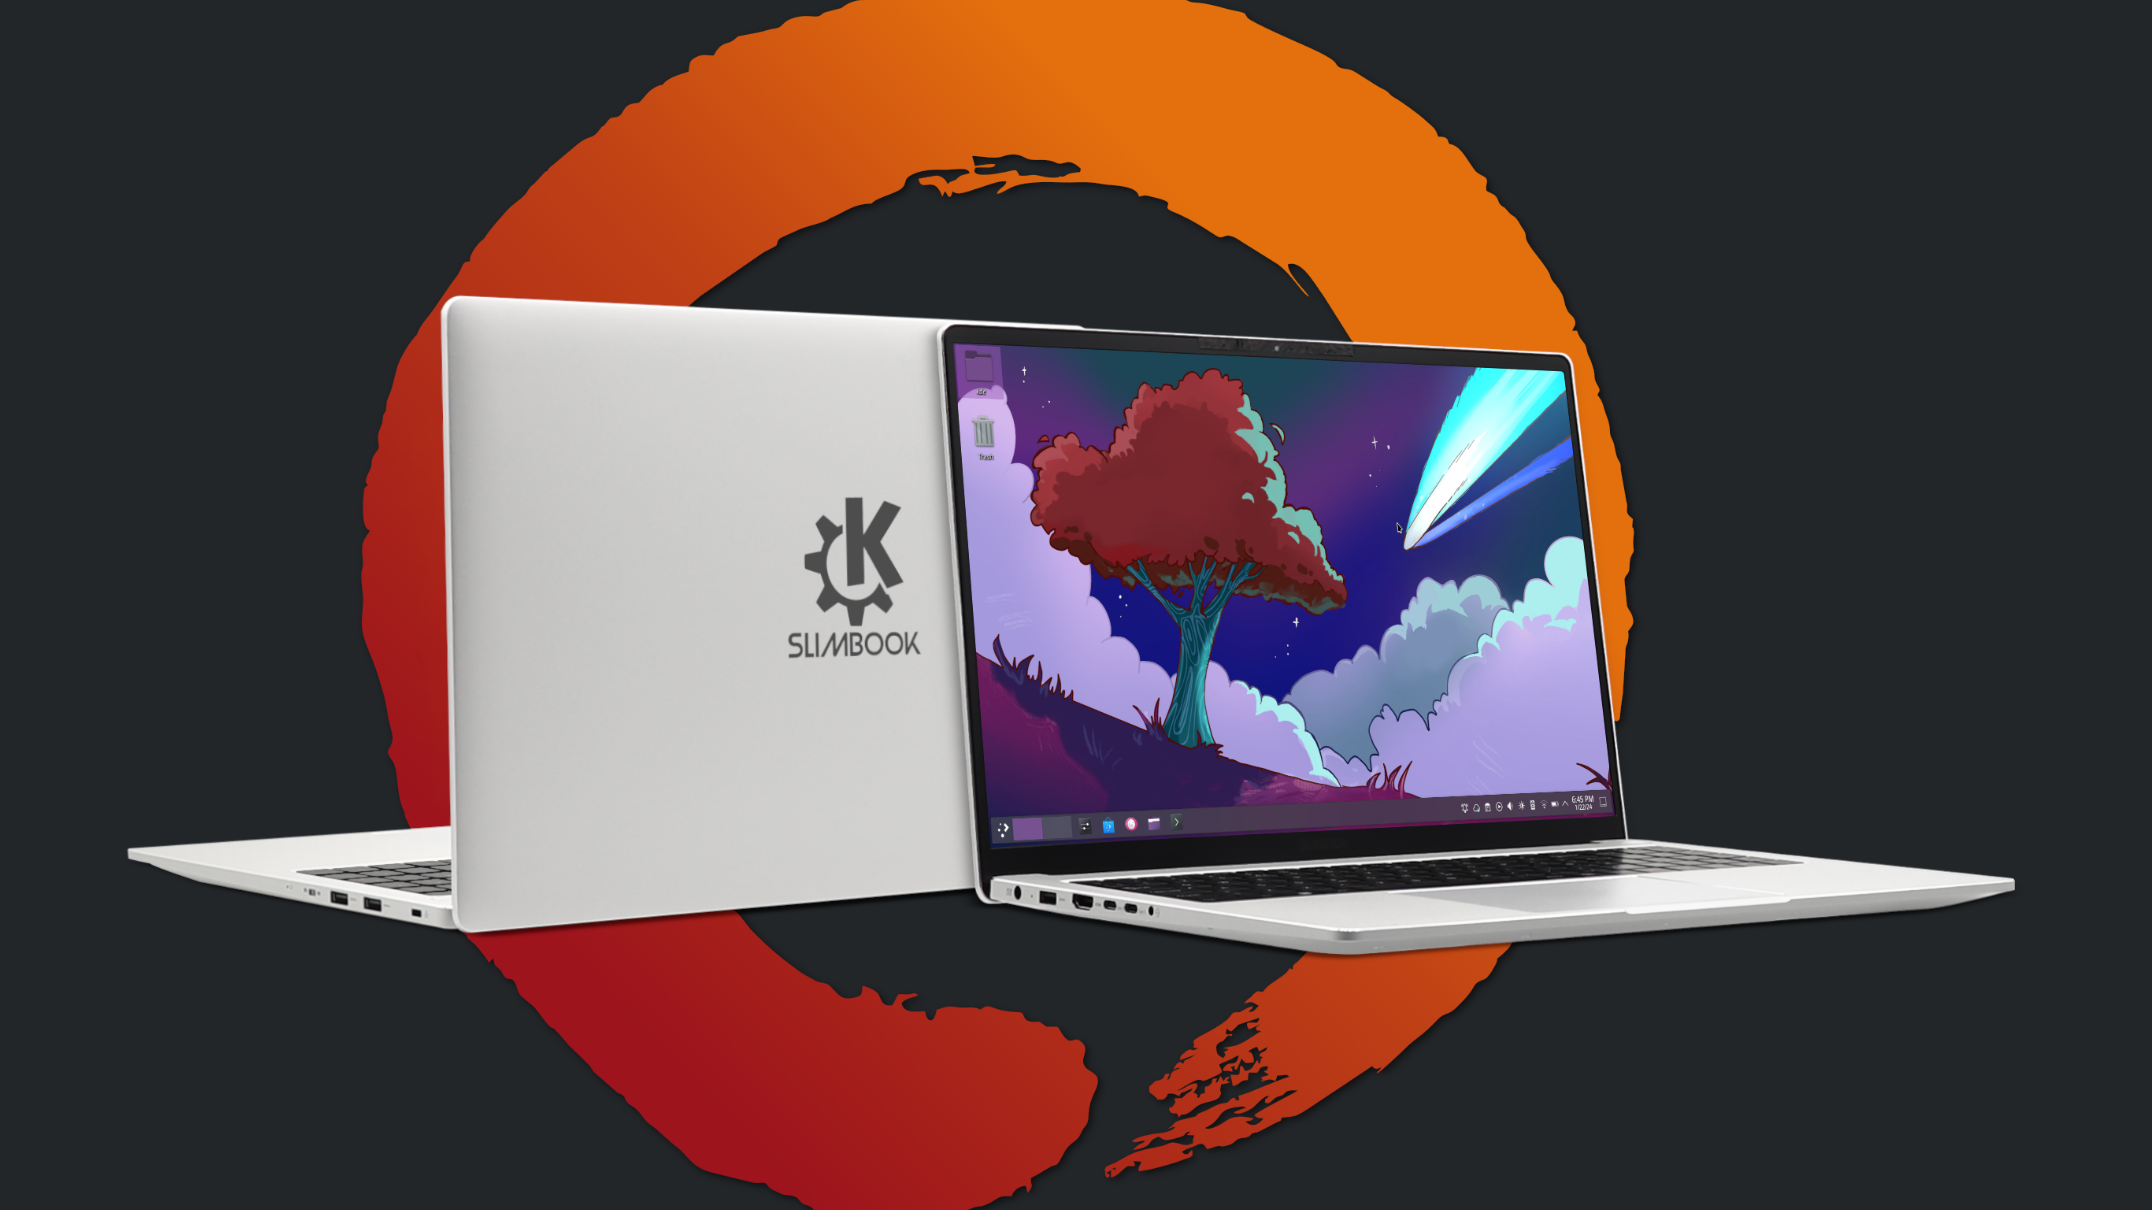 Slimbook's new AMD Ryzen laptop runs KDE Neon Linux, has a 16-inch screen